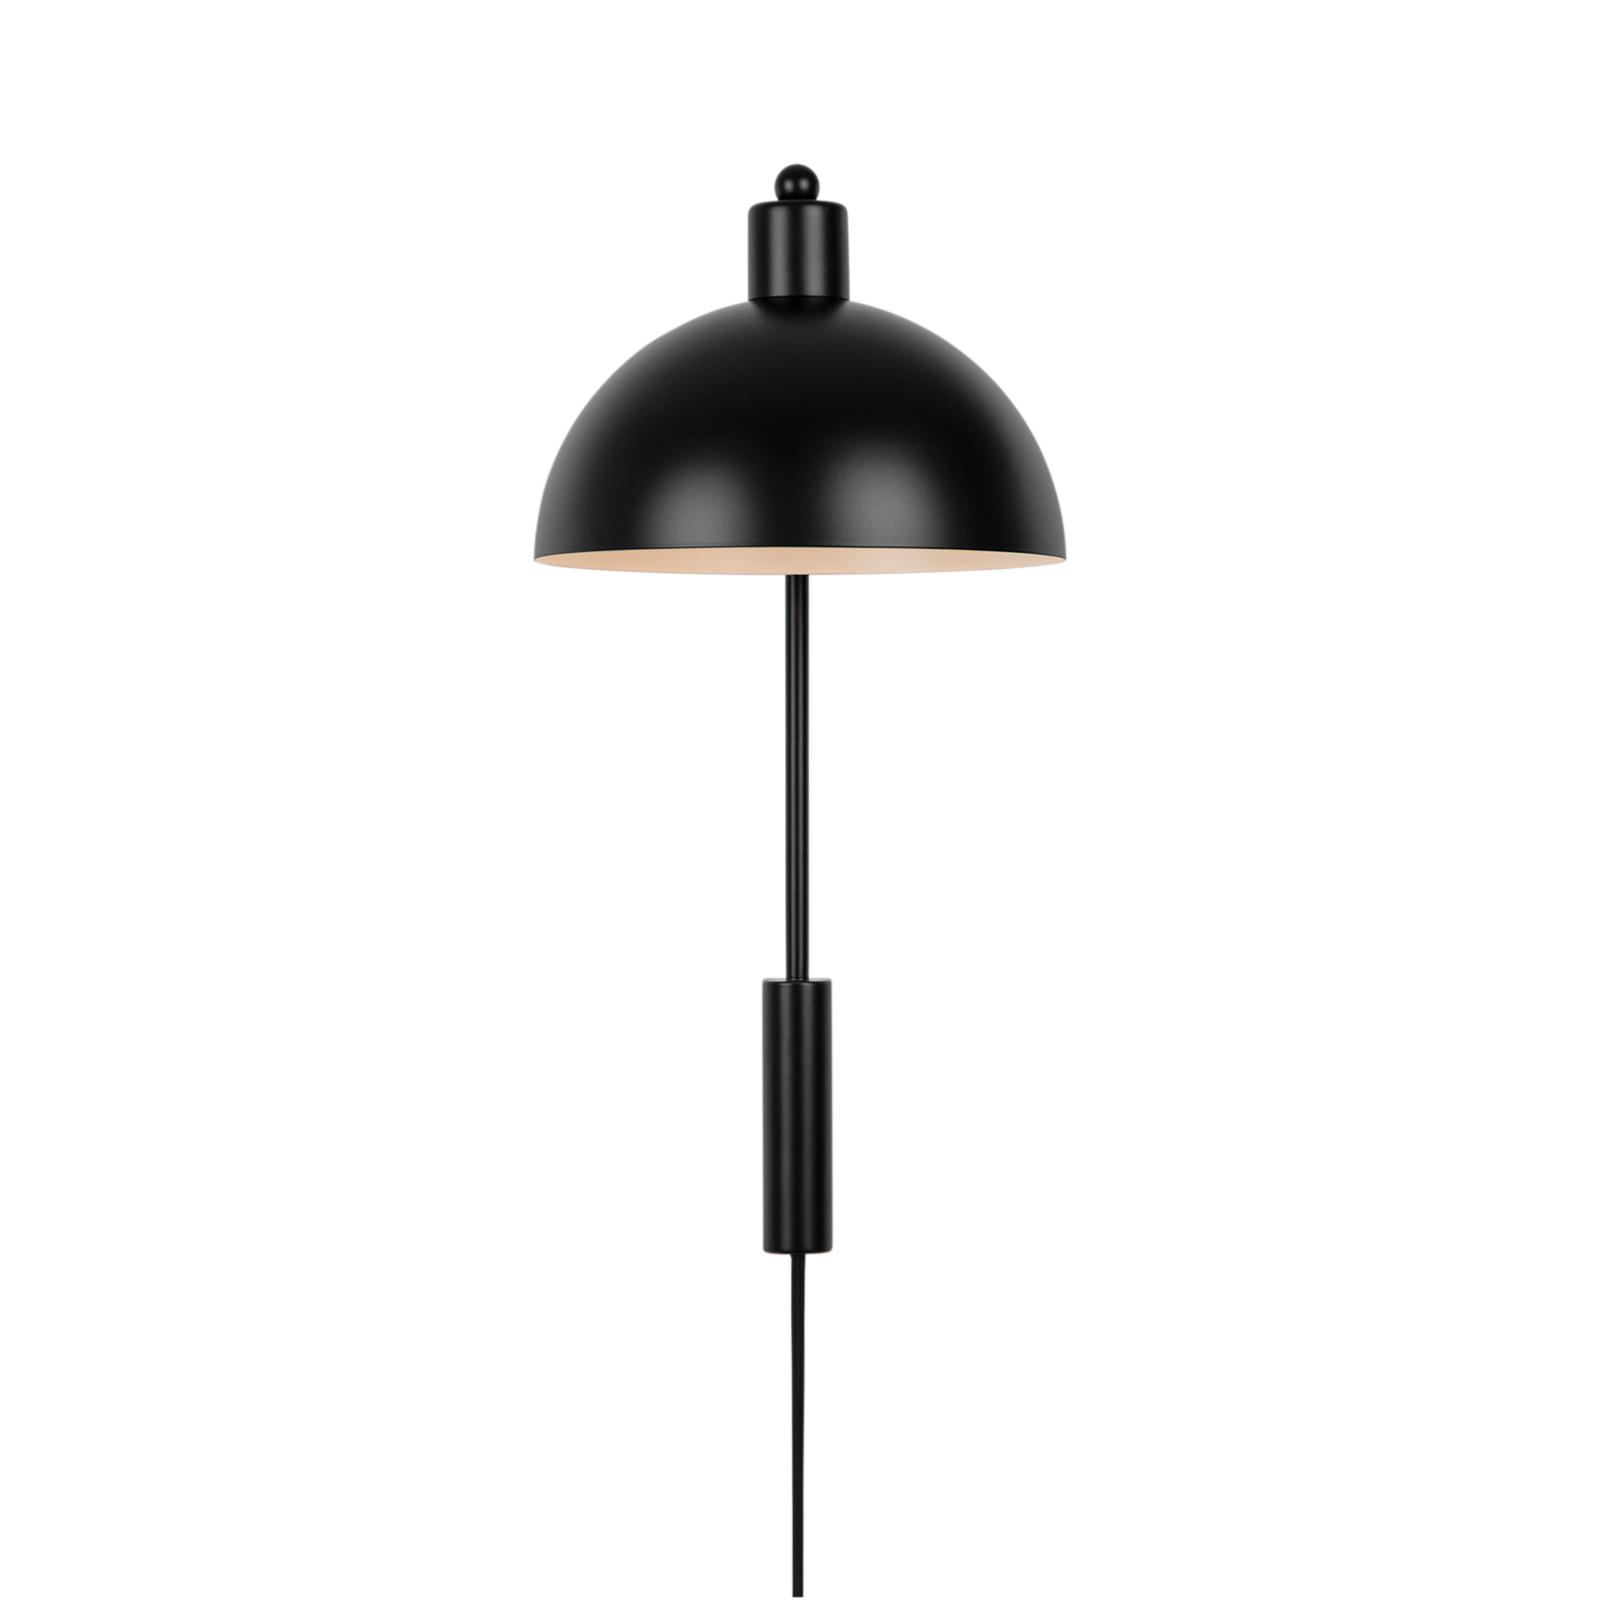 Wandlamp Ellen 20 met kabel + stekker, zwart